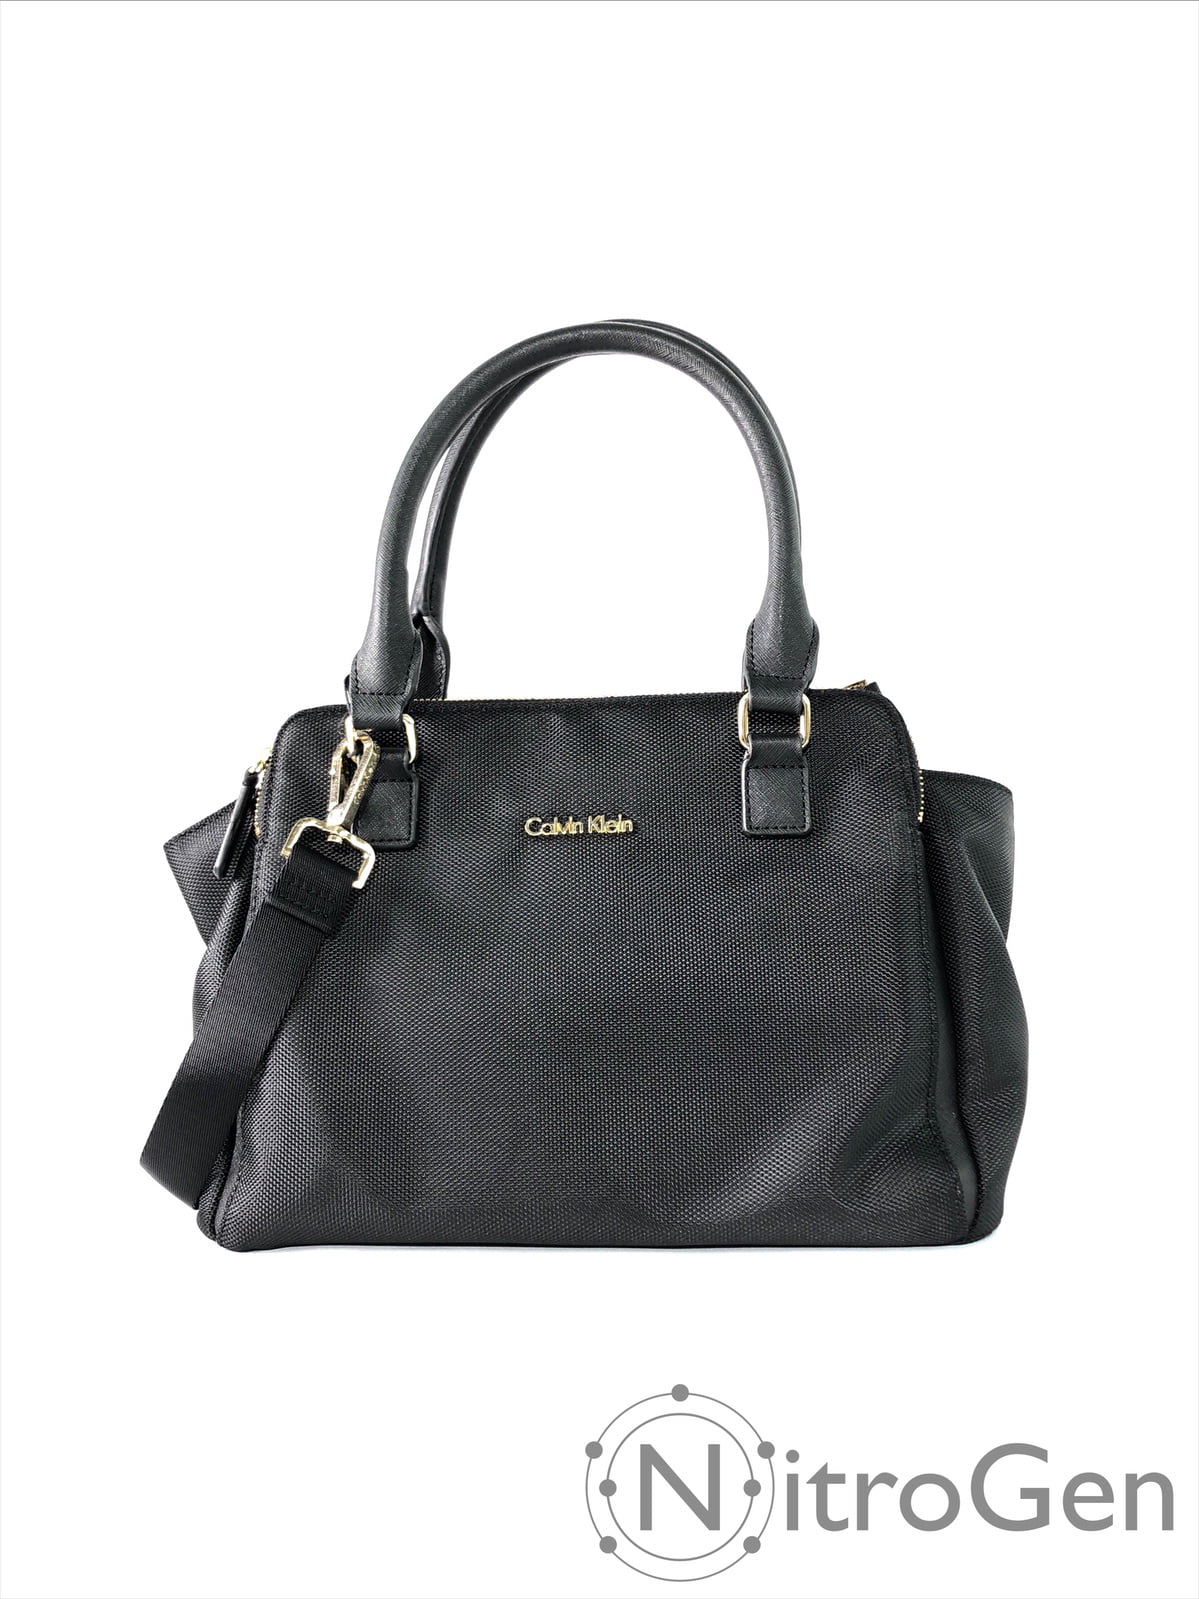 Implementeren vasthouden Boos worden Calvin Klein Fabric Leather Satchel Brand New - Walmart.com